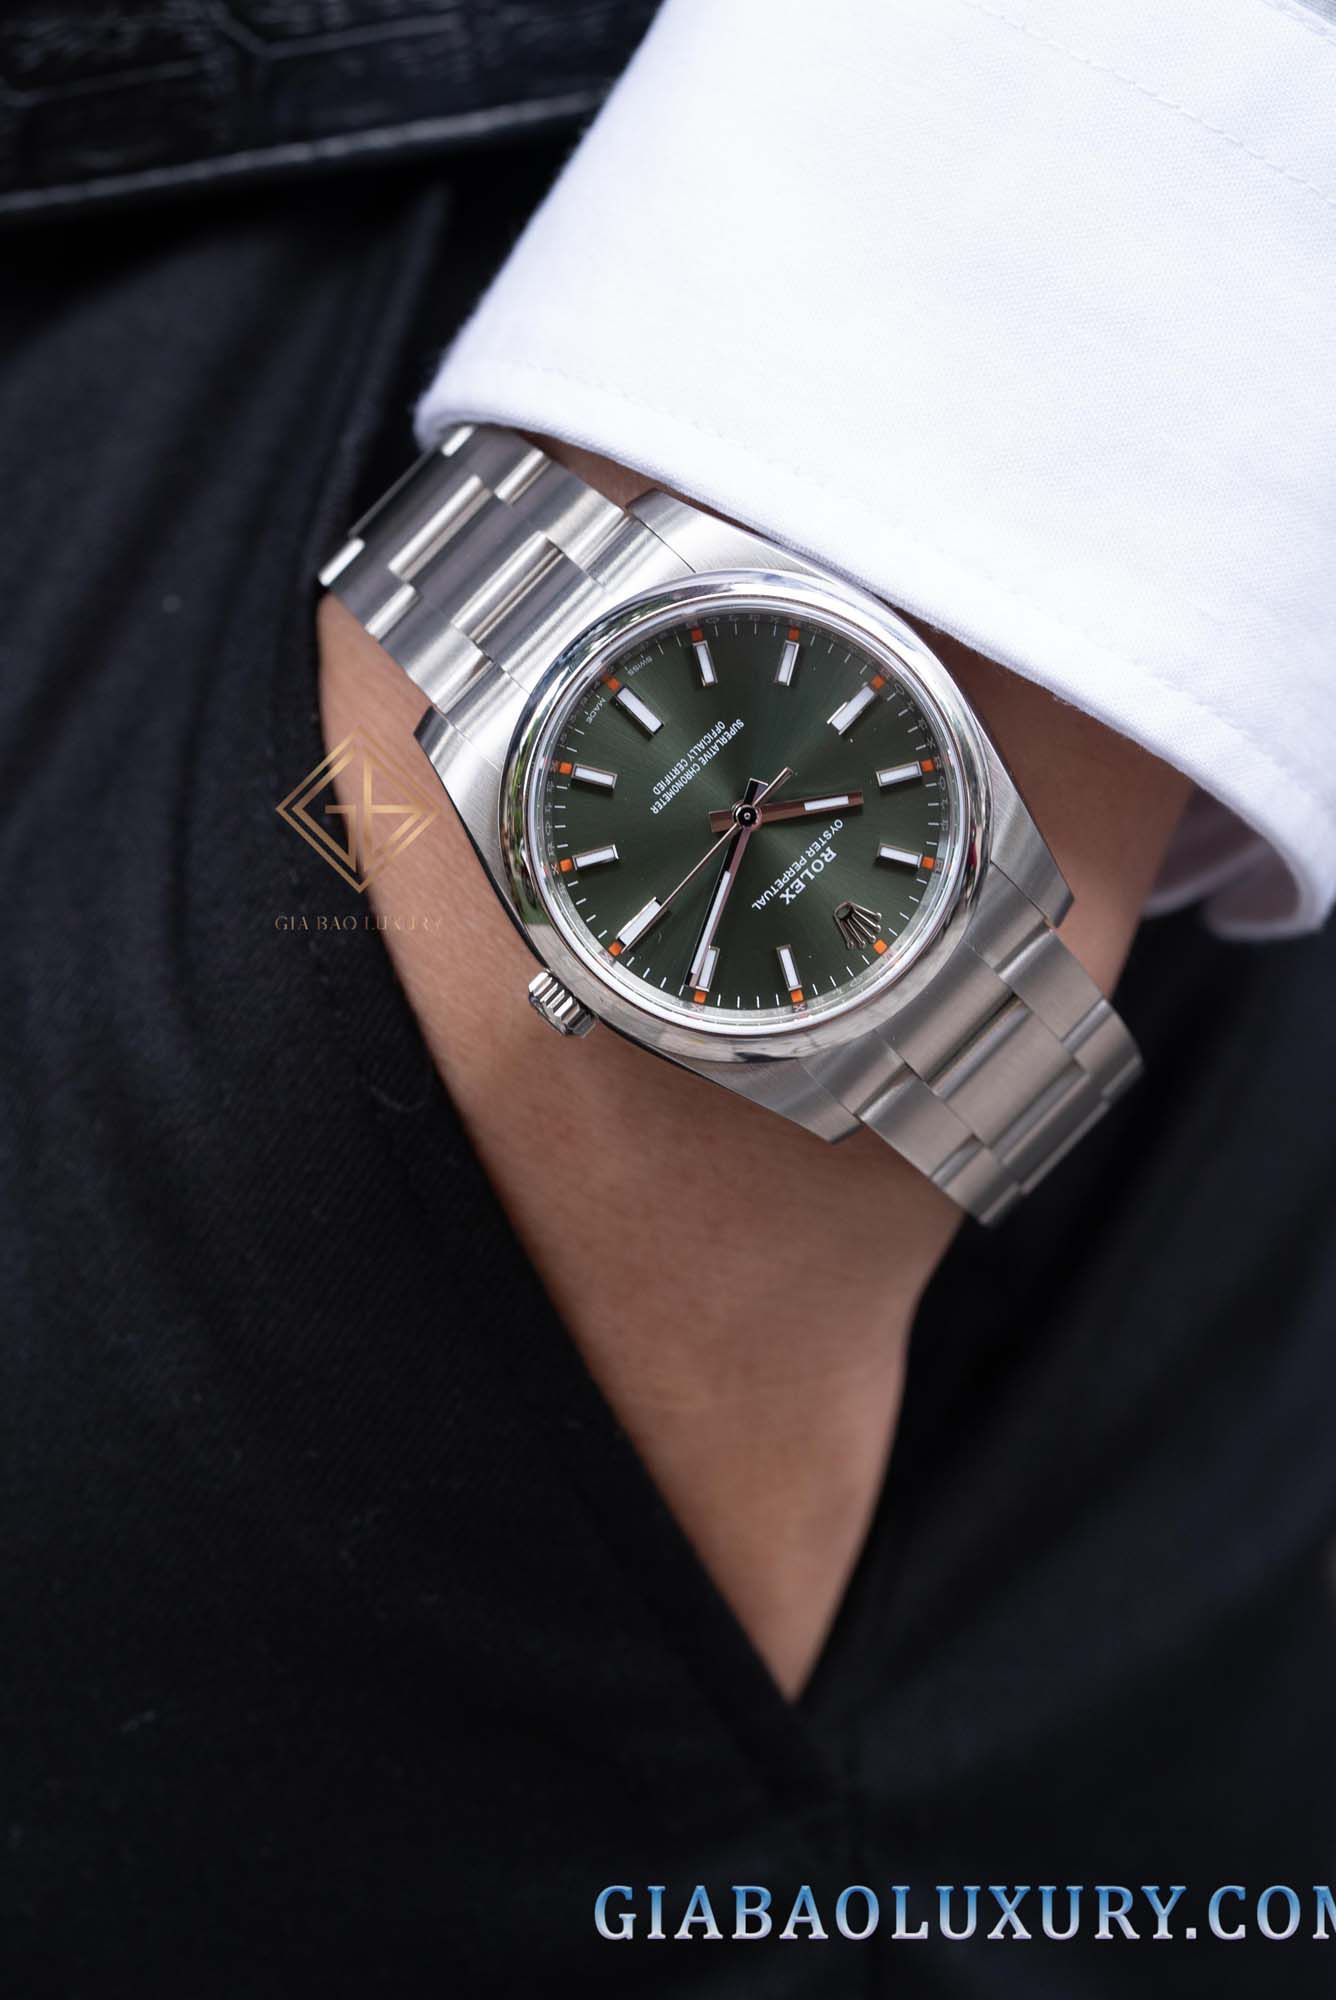 Đồng hồ Rolex chính hãng đã qua sử dụng là lựa chọn phù hợp, tiết kiệm kinh tế đối với các tín đồ yêu thích đồng hồ cao cấp tại Việt Nam